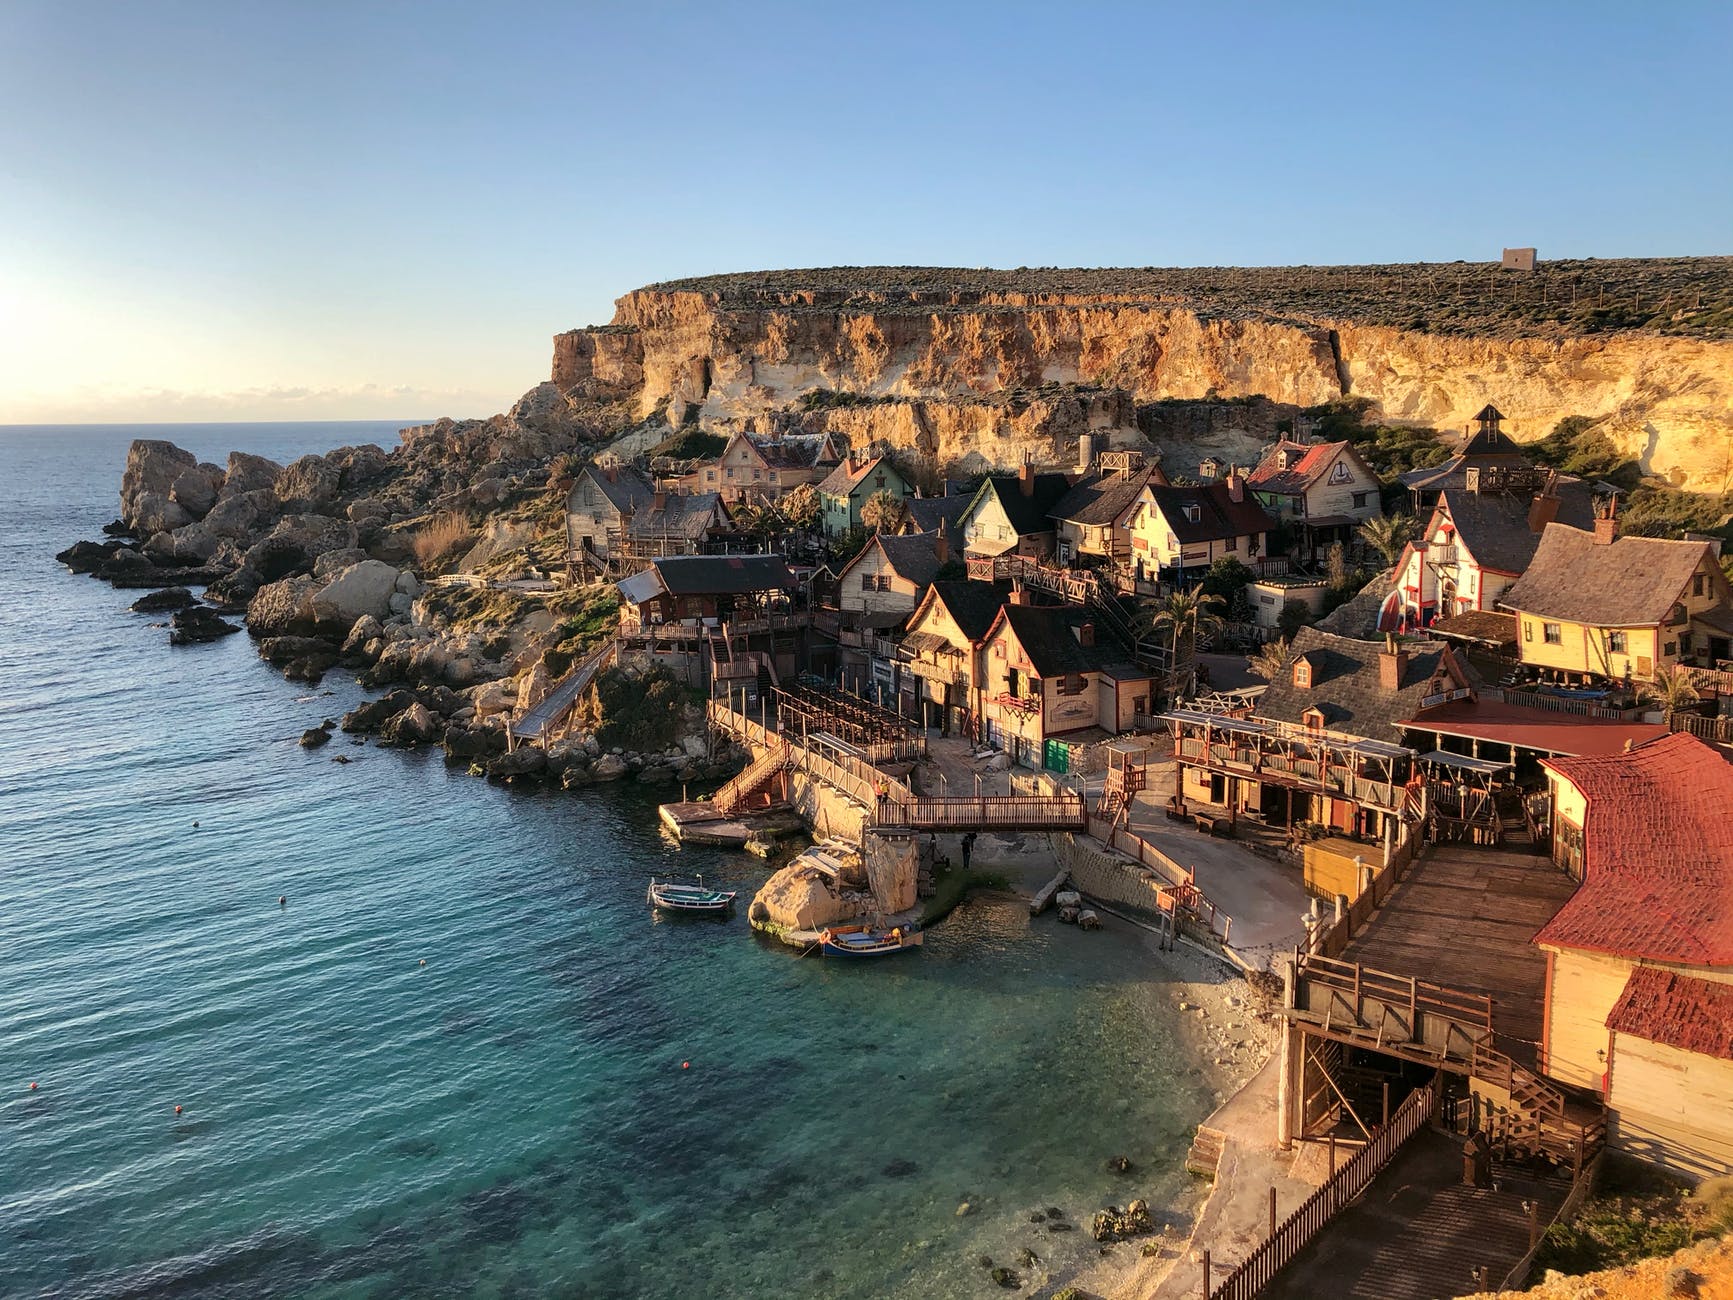 Herrliches Malta: die Insel bereitet an 365 Tagen im Jahr Vergnügen, besonders schön ist sie im Frühling.